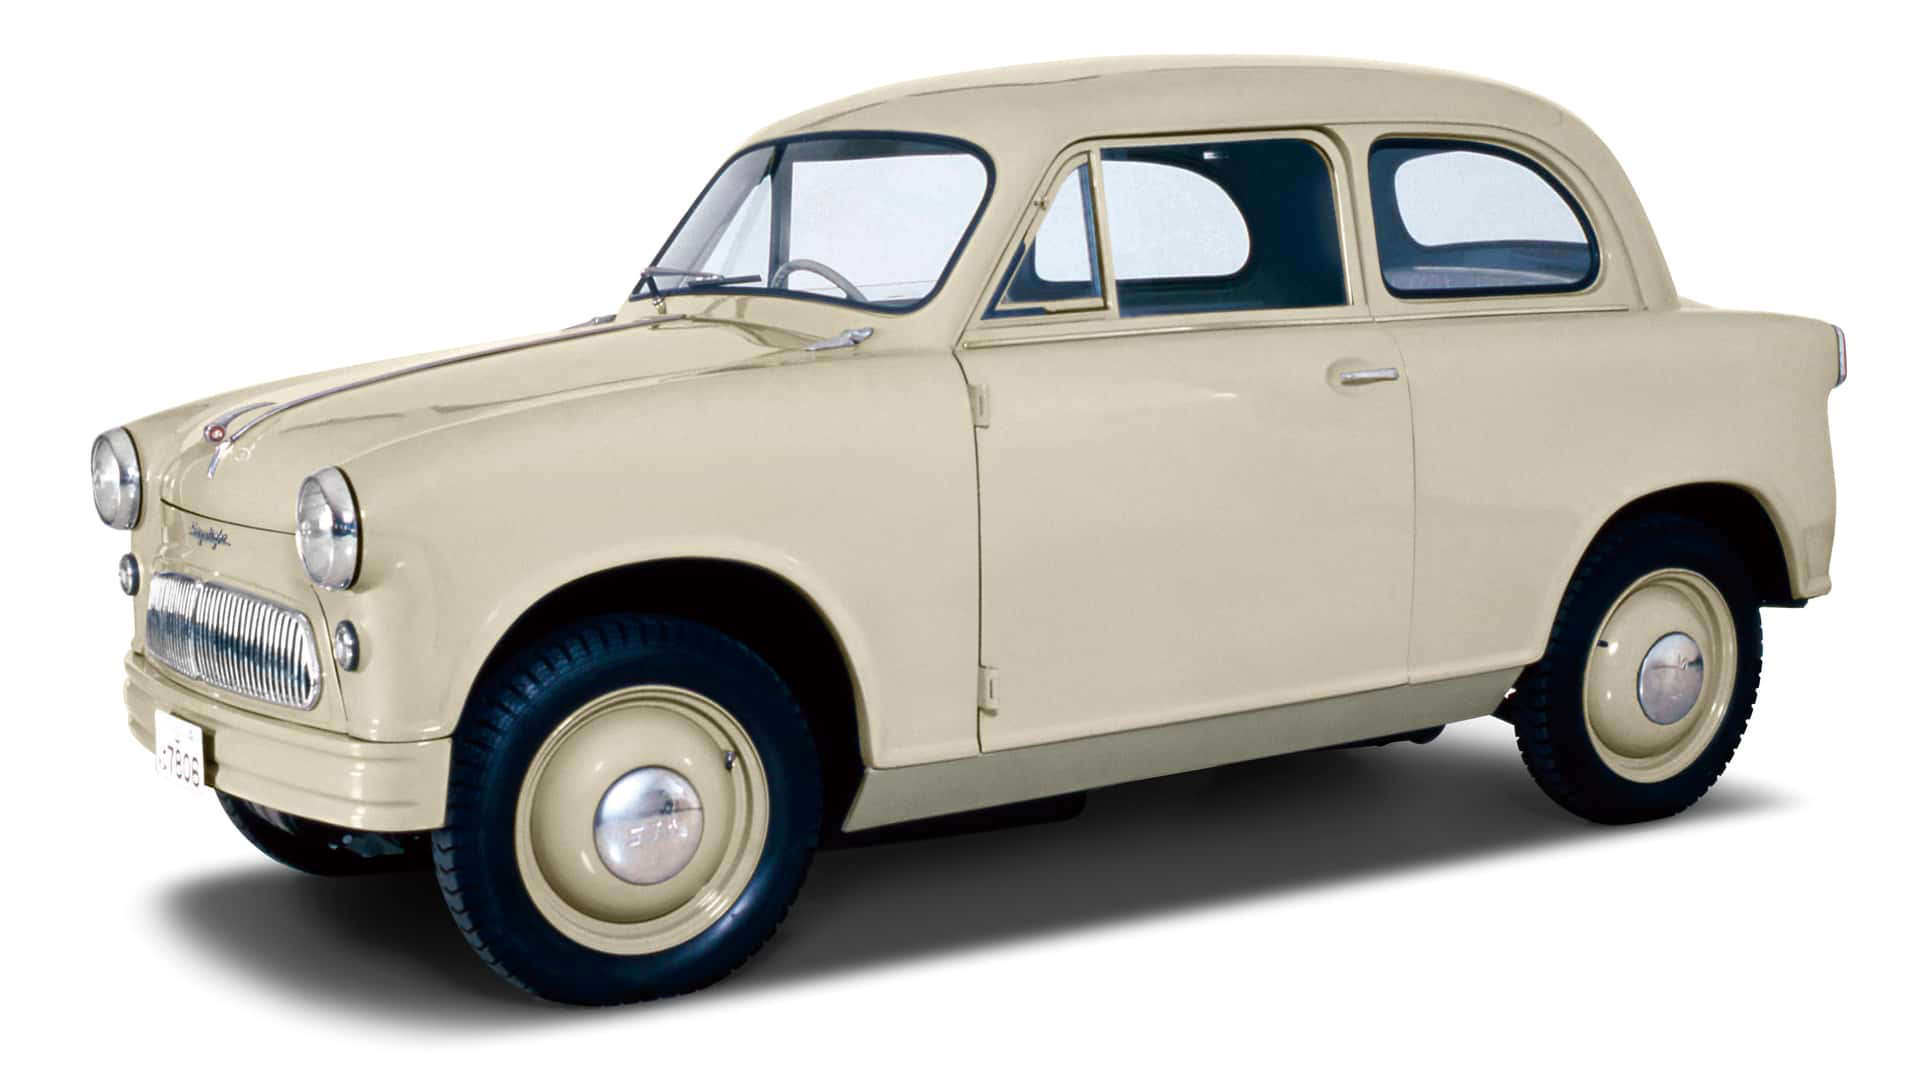 1955 Suzulight – Suzuki’s first car